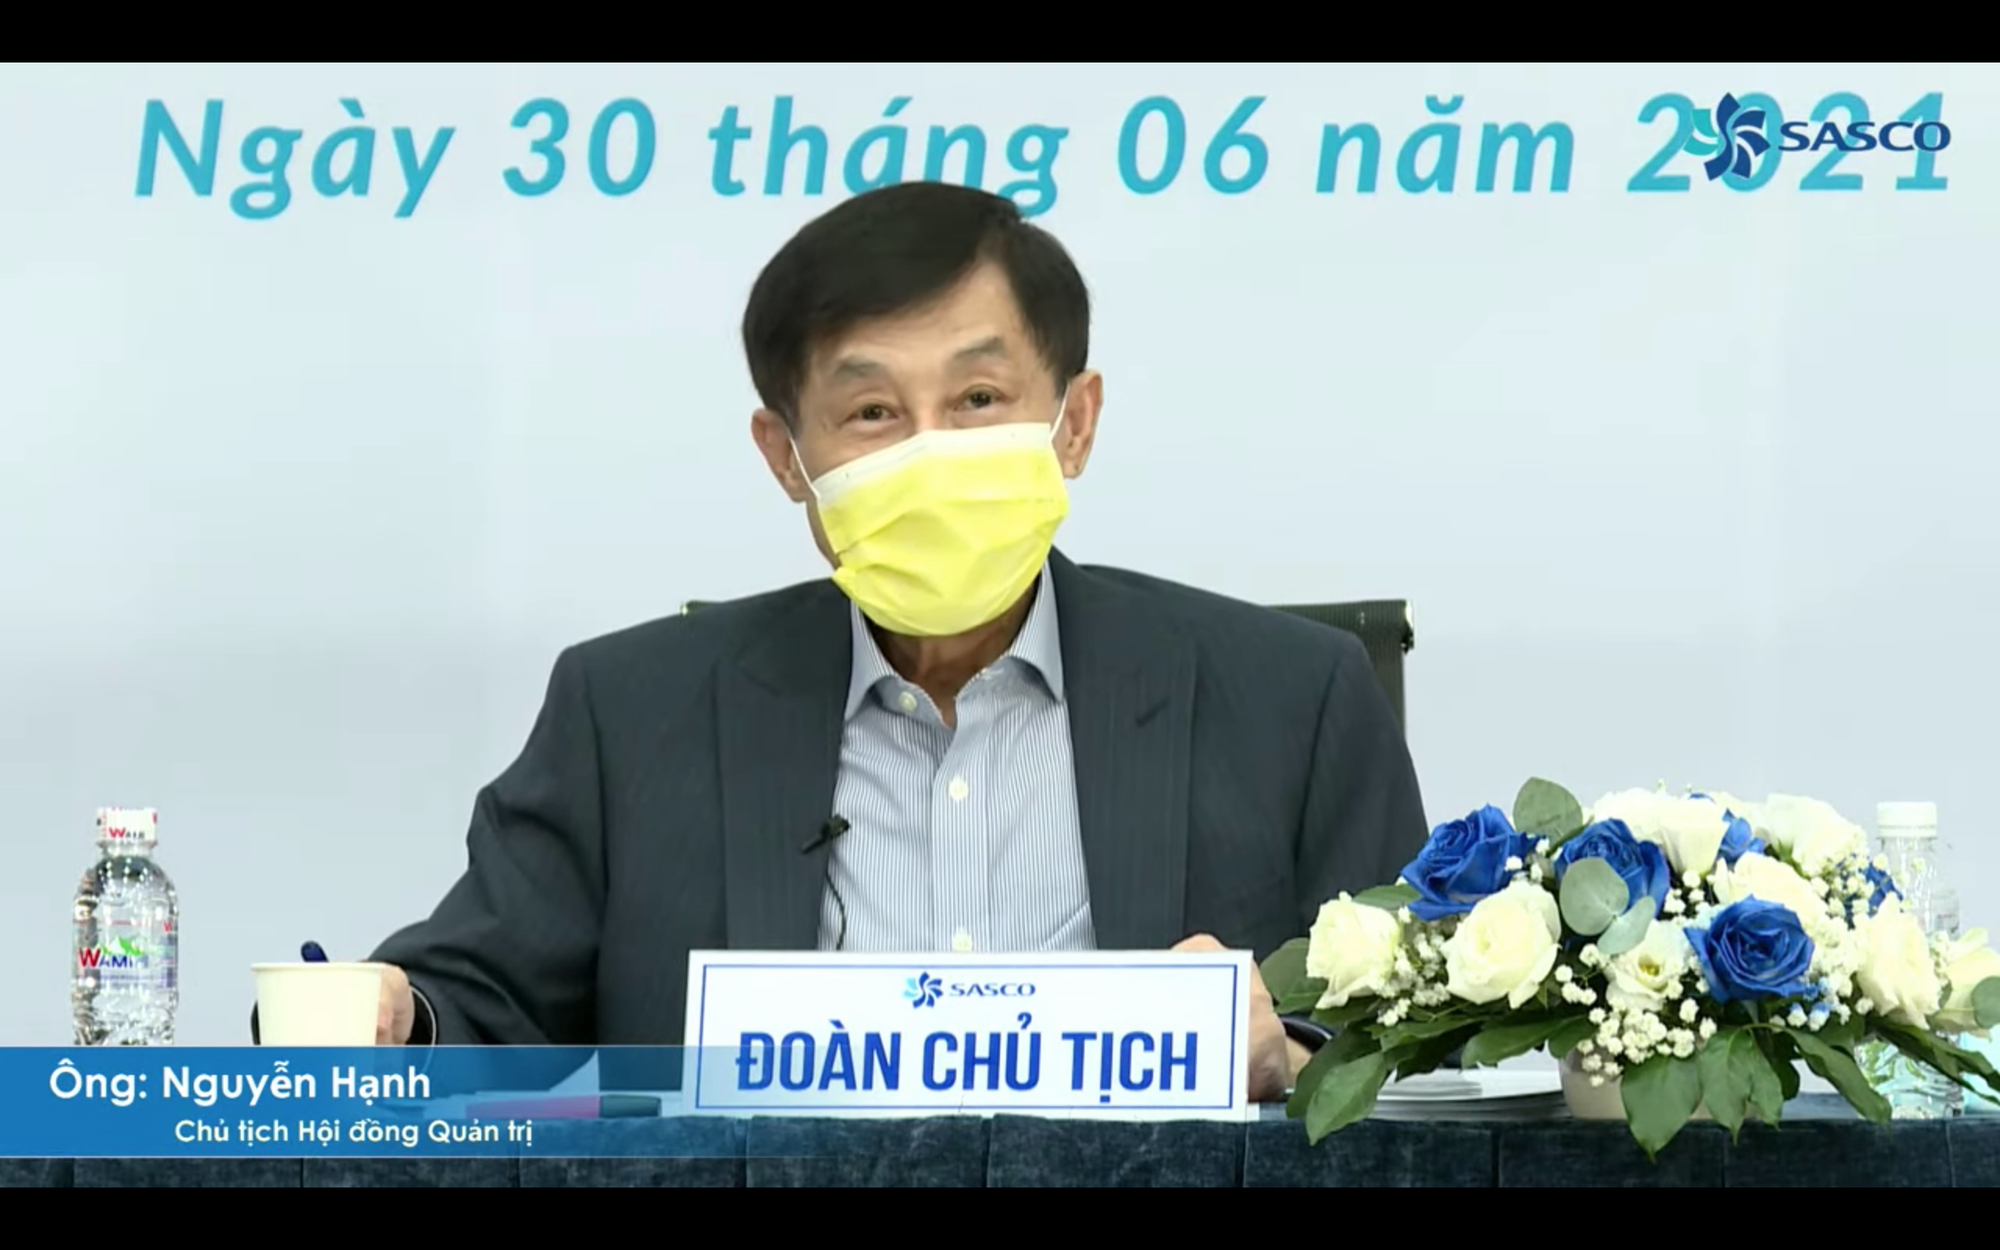 Chủ tịch Johnathan Hạnh Nguyễn: 'Tôi sợ lỗ tăng, chứ không sợ lãi thụt lùi' - Ảnh 1.